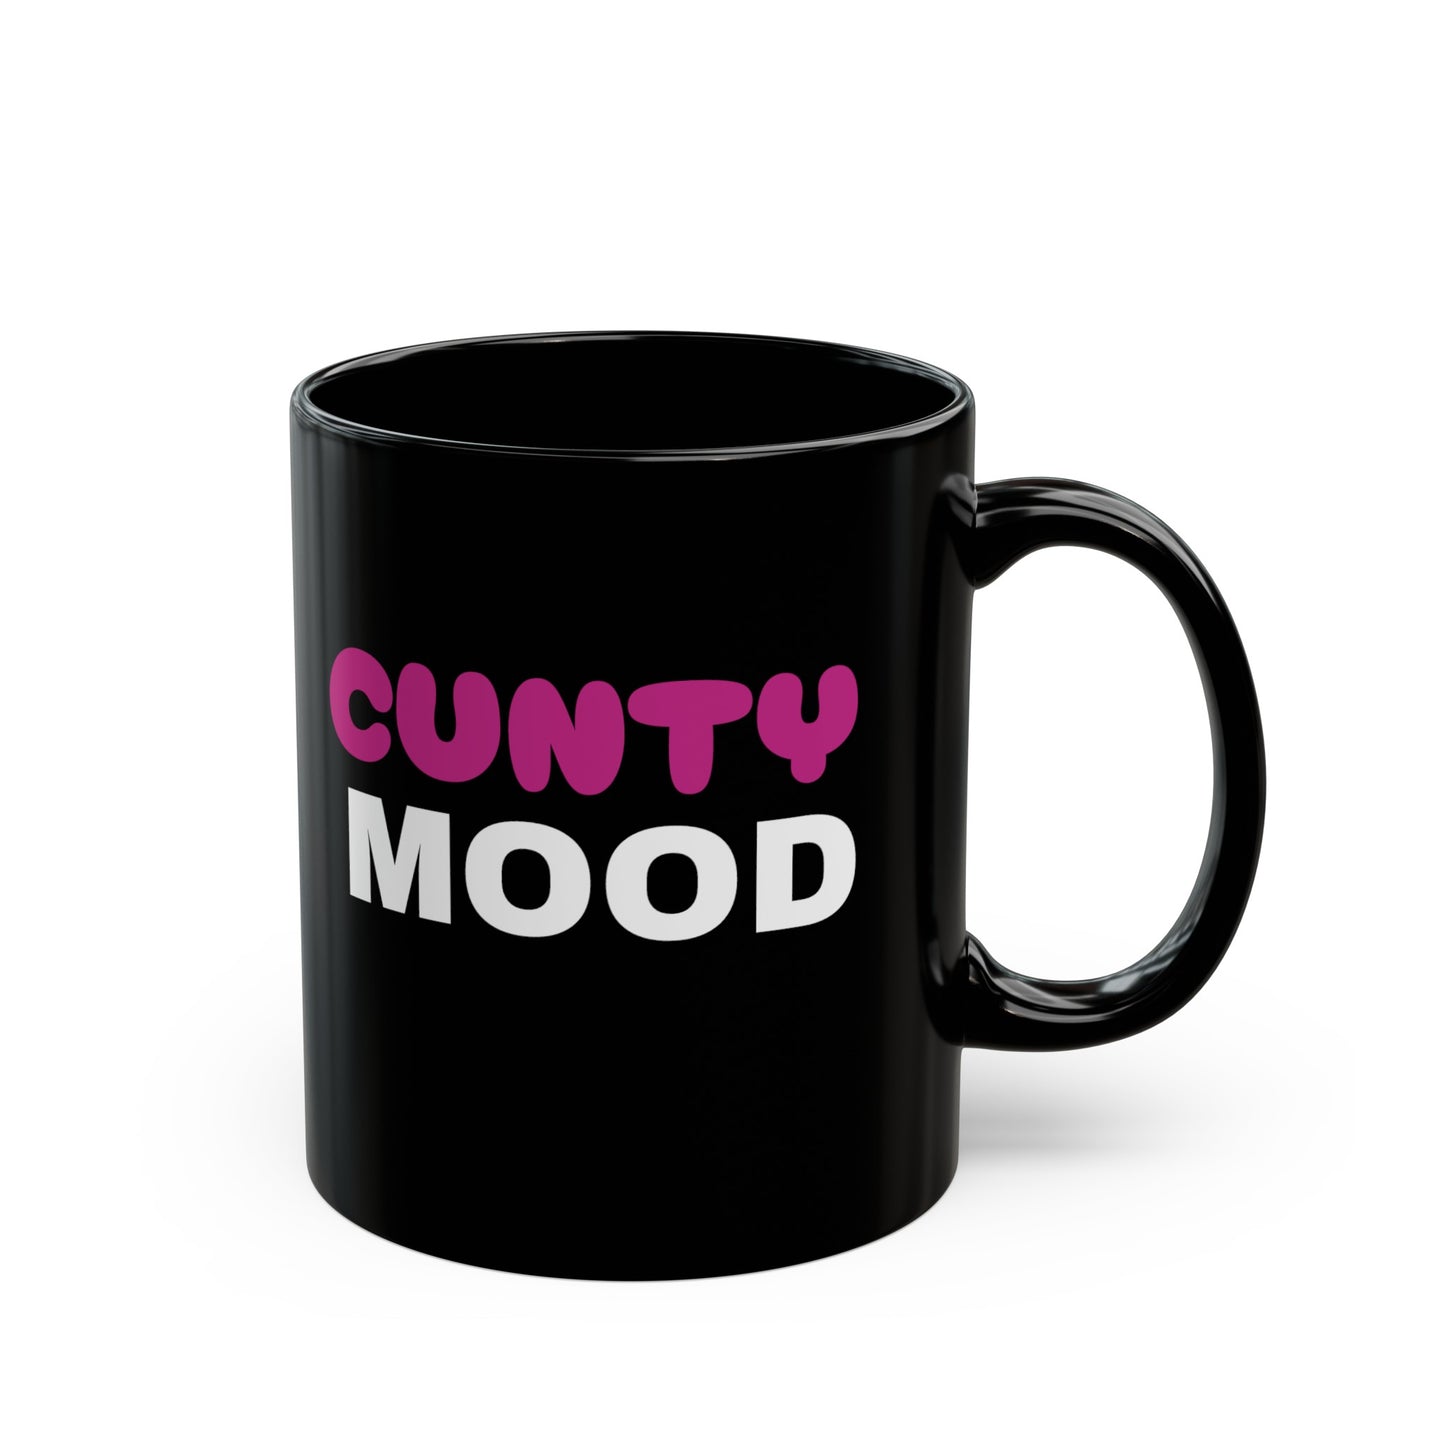 CUNTY MOOD - Black Mug (11oz)